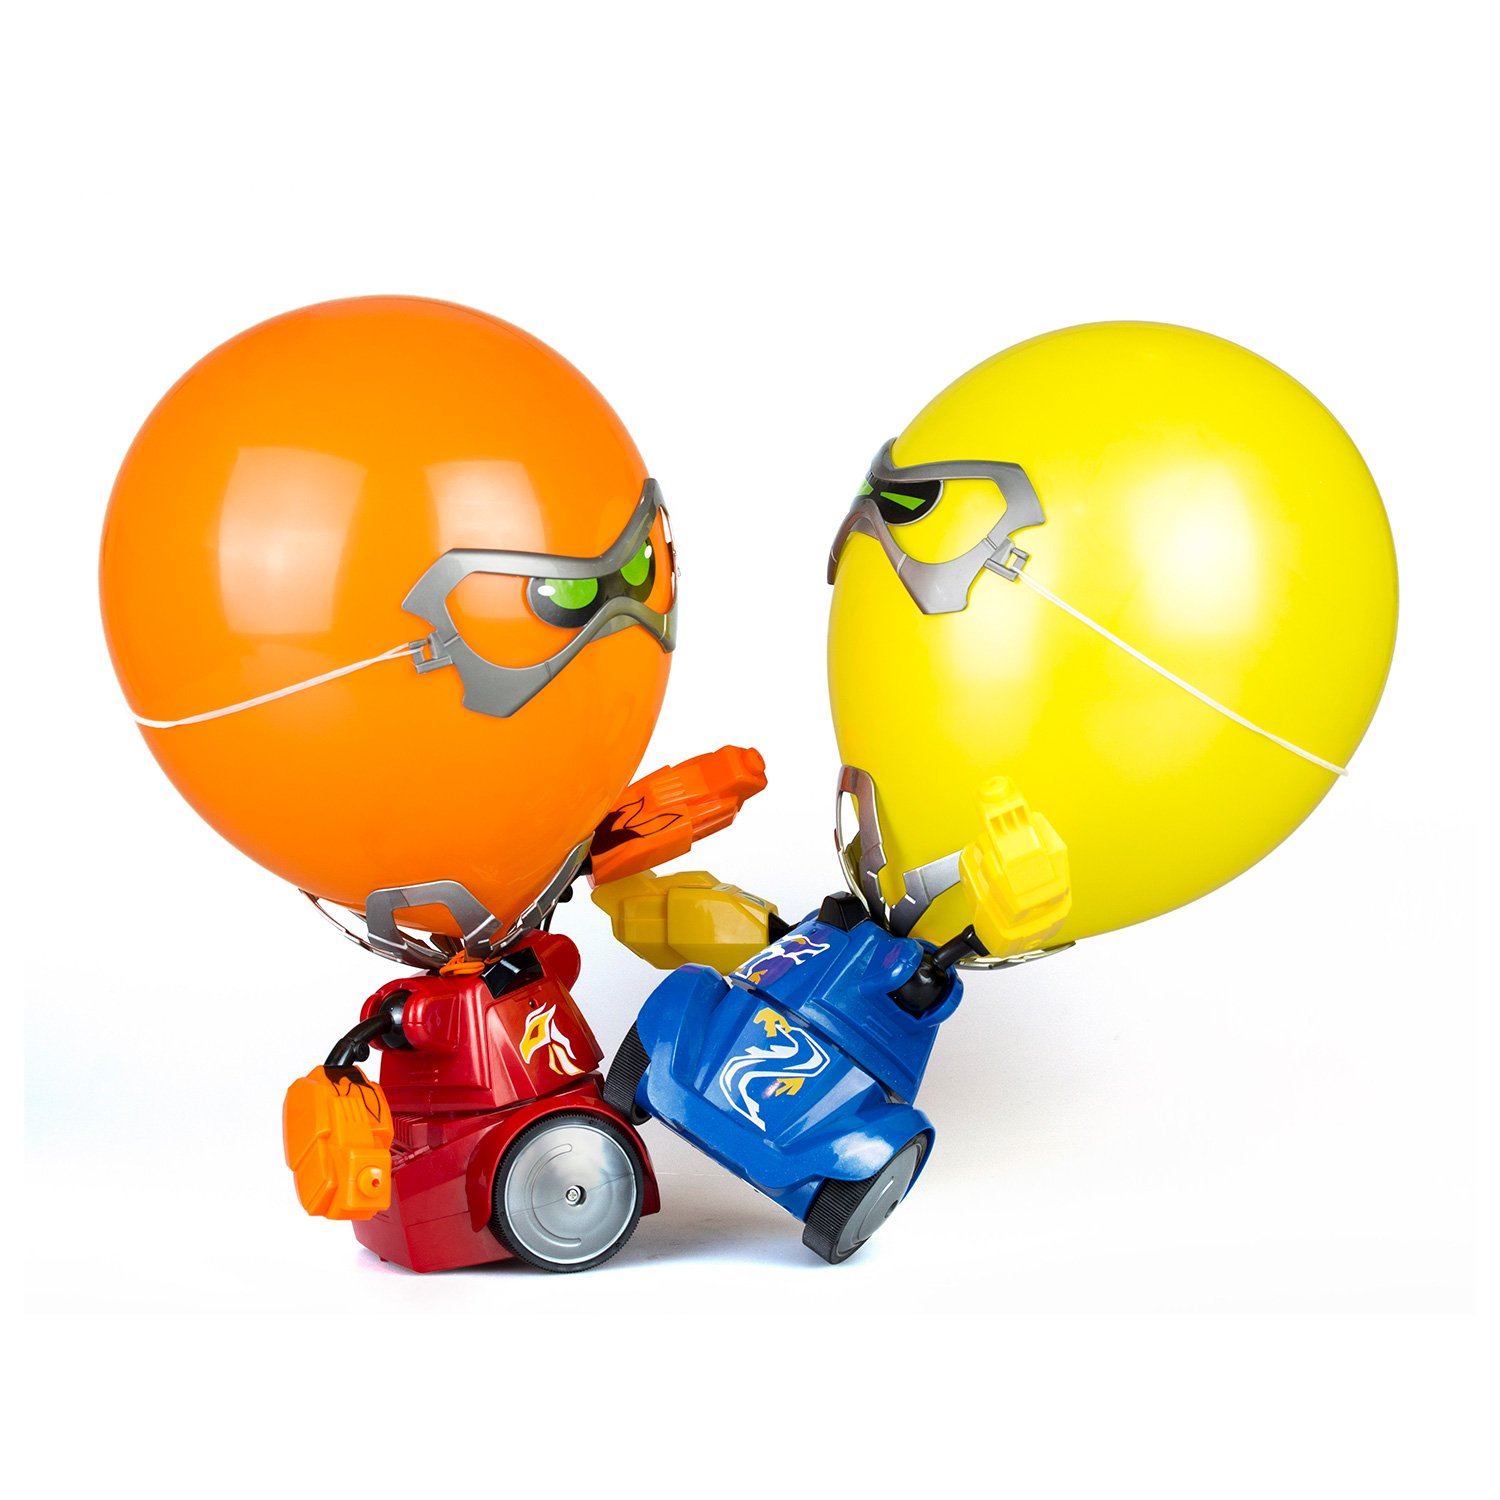 Битва шаров. Silverlit Robot Ycoo шарики. Робот Сильверлит Робокомбат. Боевые роботы Робокомбат шарики. Робот Ycoo Ду Робокомбат шарики красный-синий 88039y.